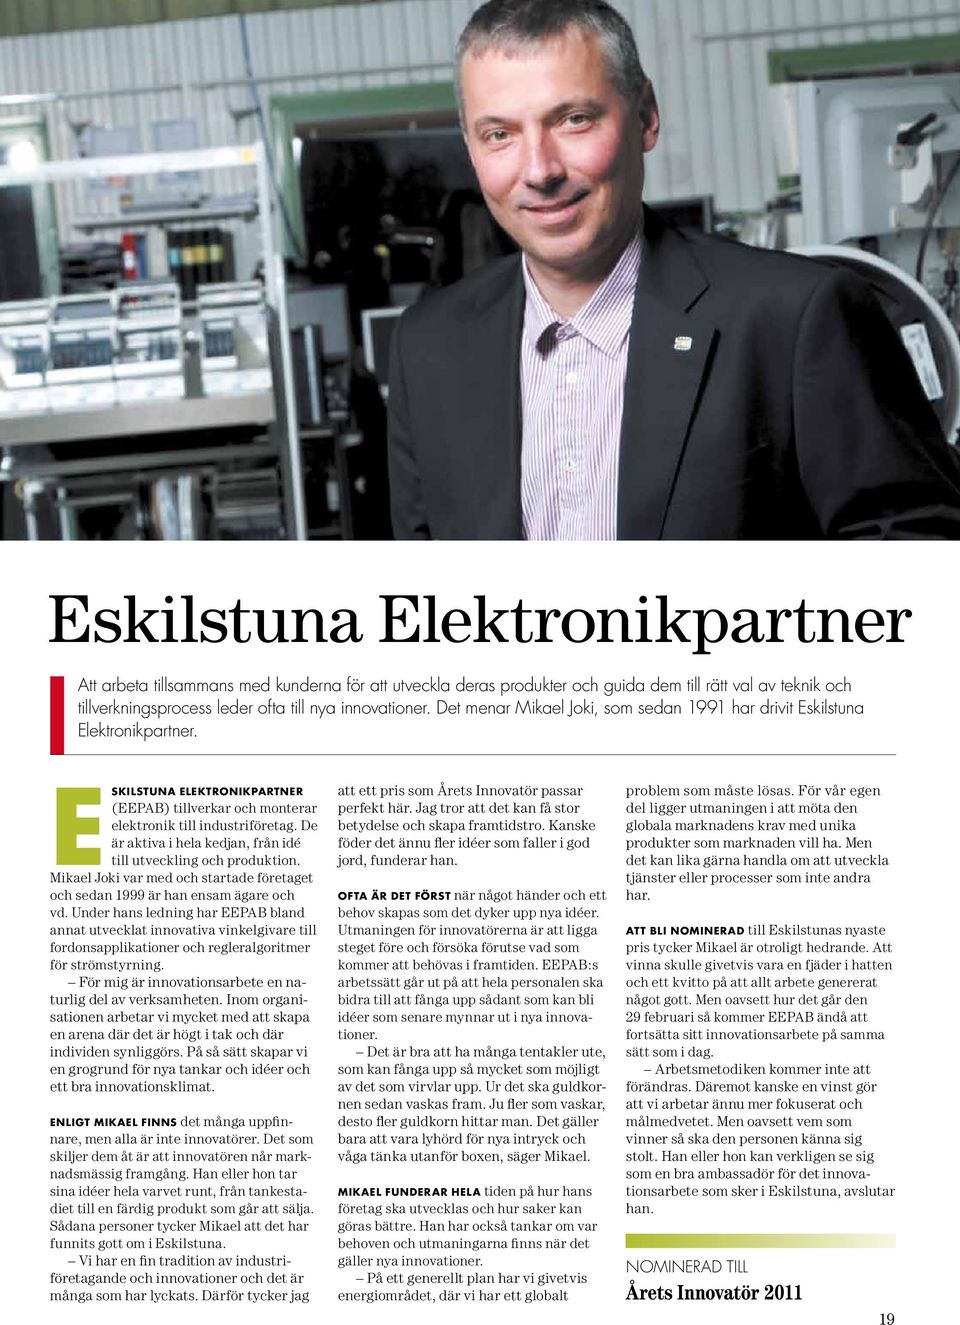 eskilstuna Elektronikpartner är aktiva i hela kedjan, från idé (EEPAB) tillverkar och monterar elektronik till industriföretag. De till utveckling och produktion.